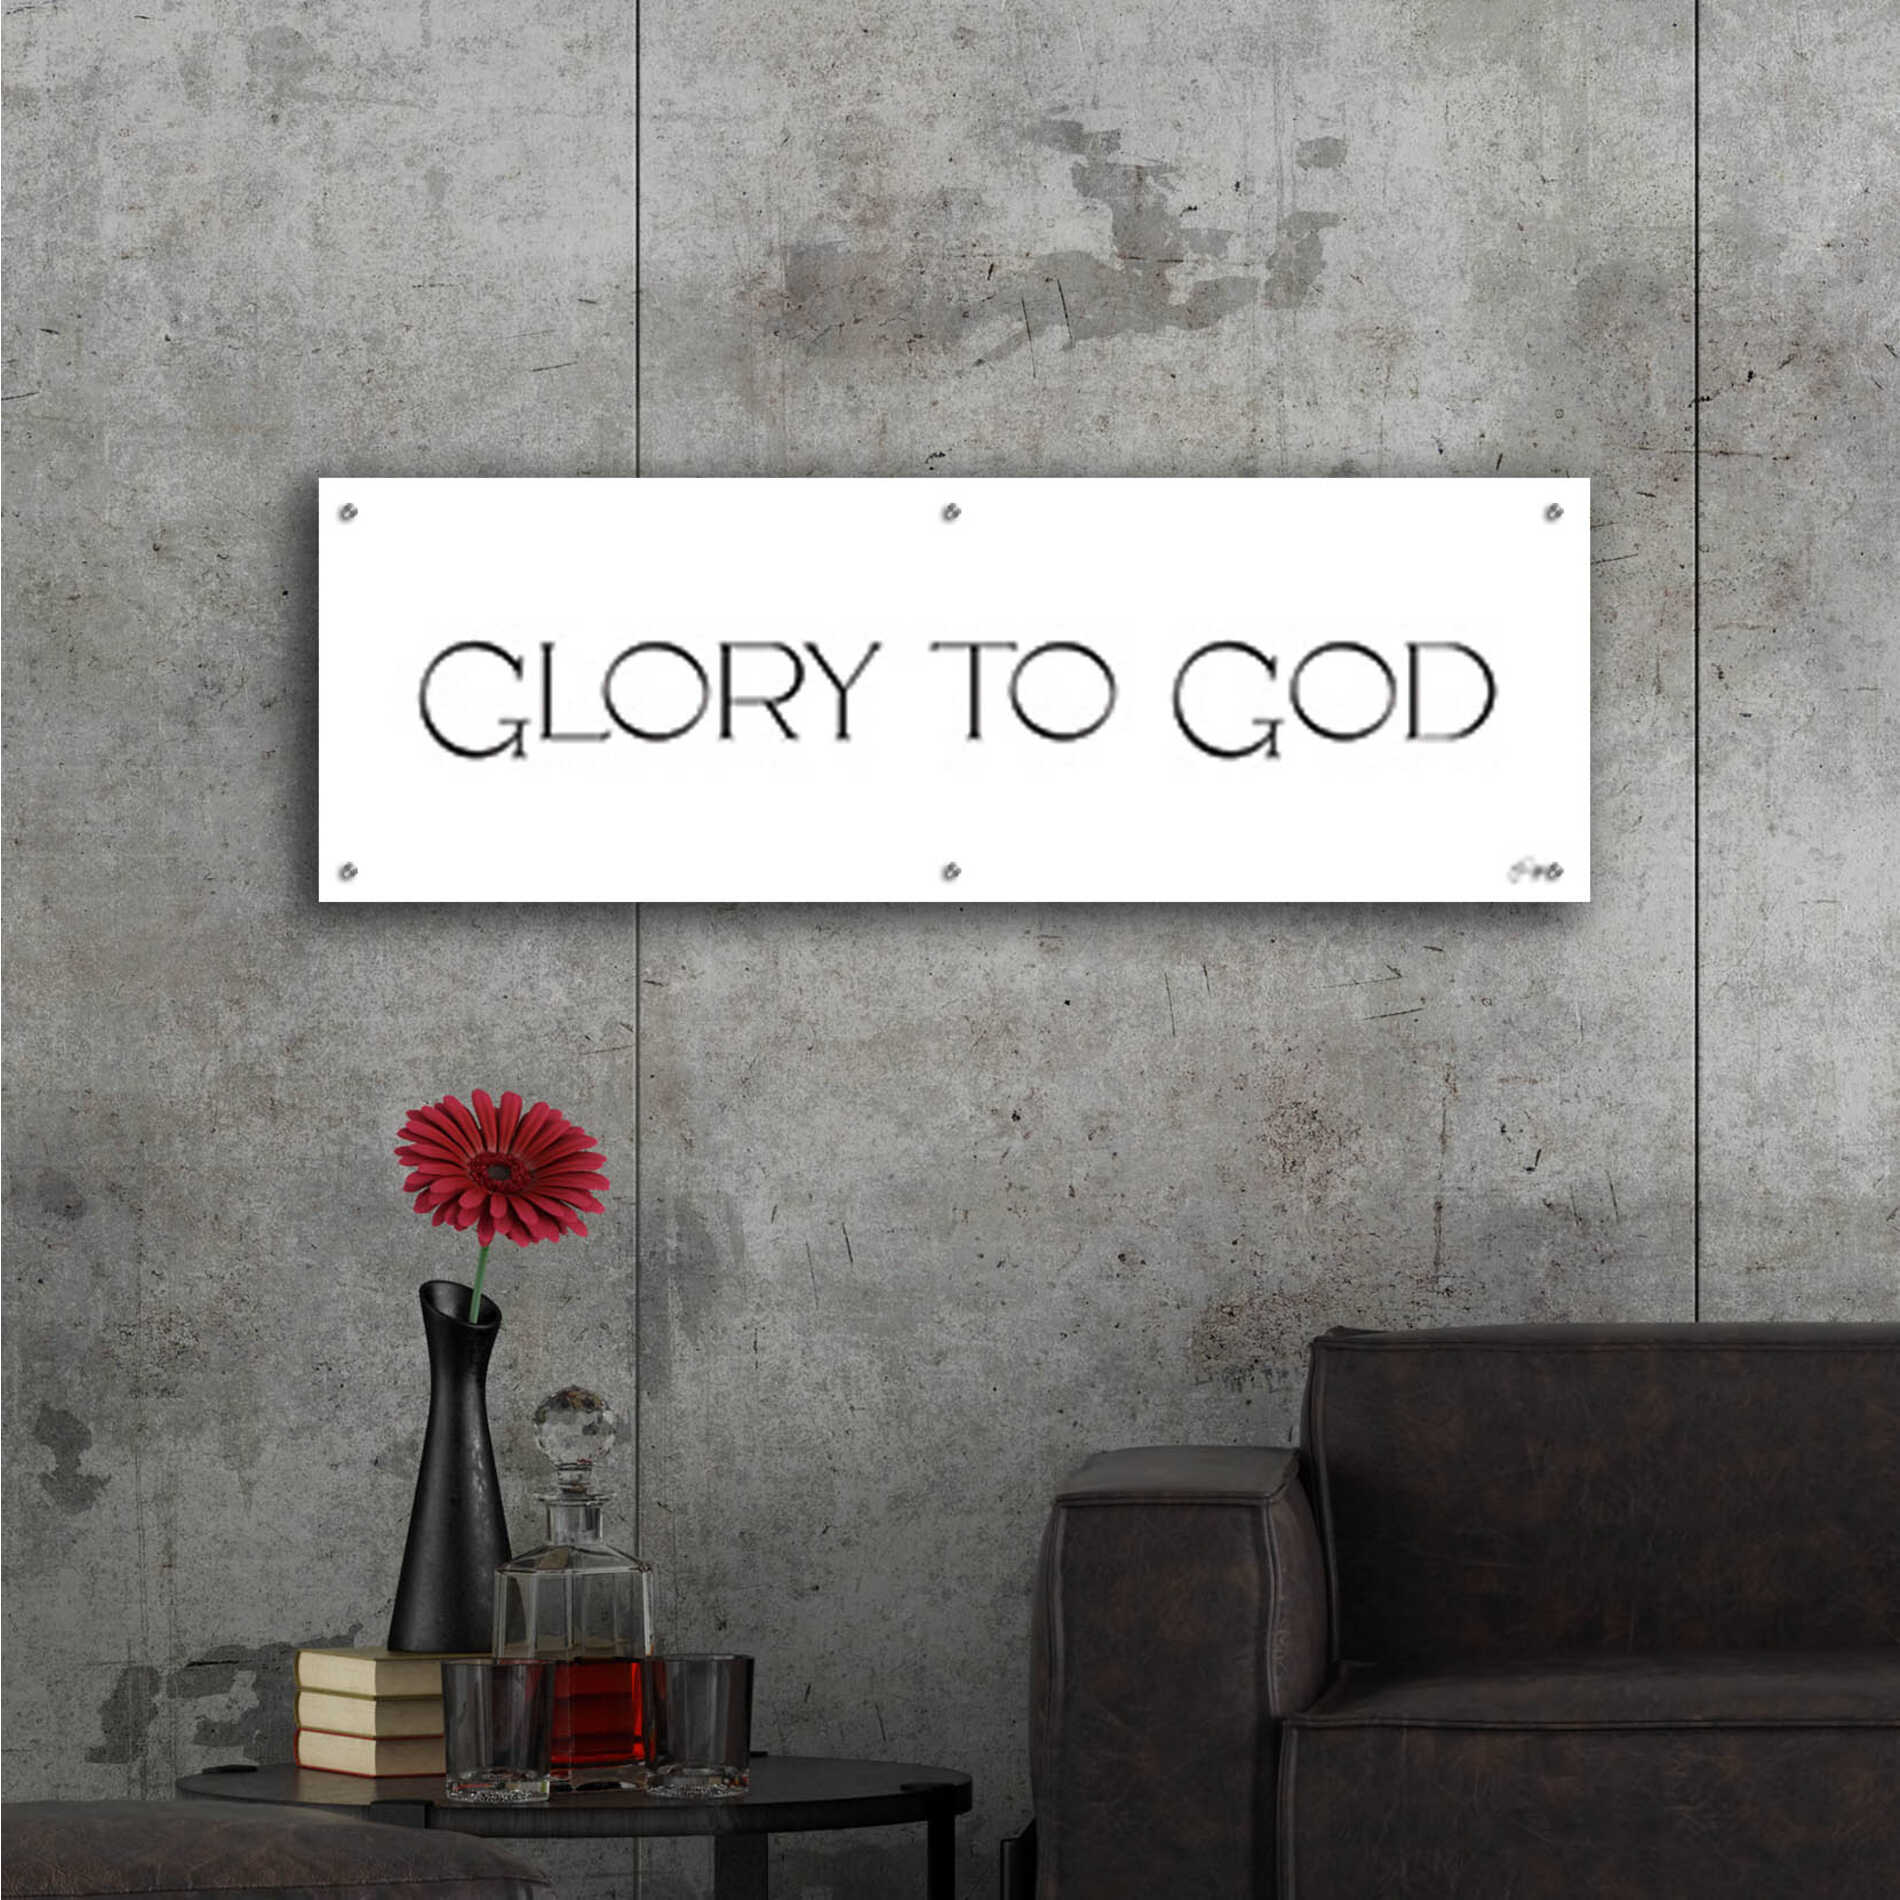 Epic Art 'Glory to God' by Yass Naffas Designs, Acrylic Glass Wall Art,48x16